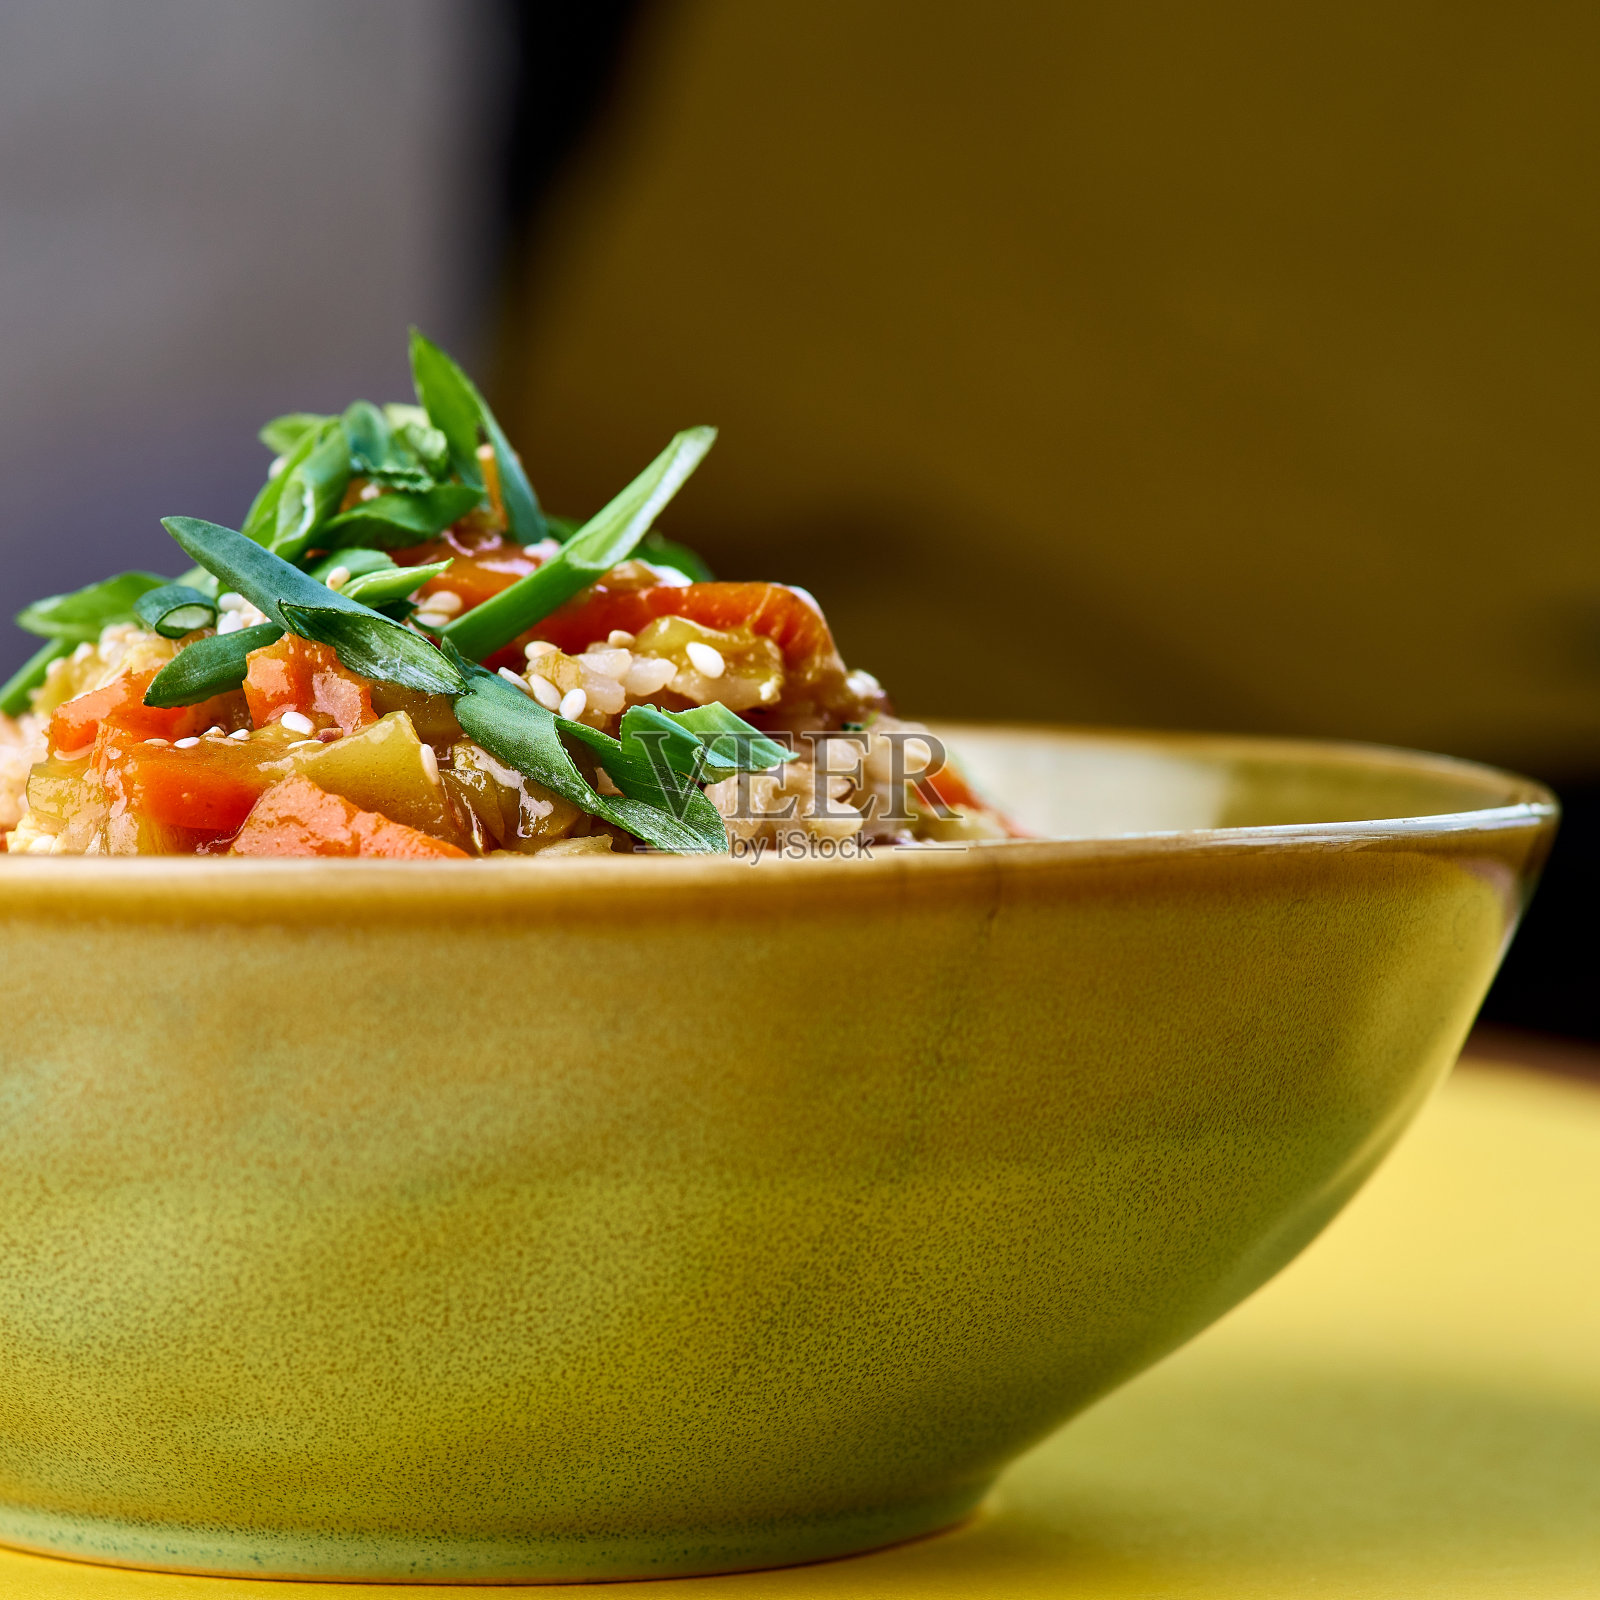 一碗炒饭和蔬菜。传统的中国食物。黄色的水平视图照片摄影图片